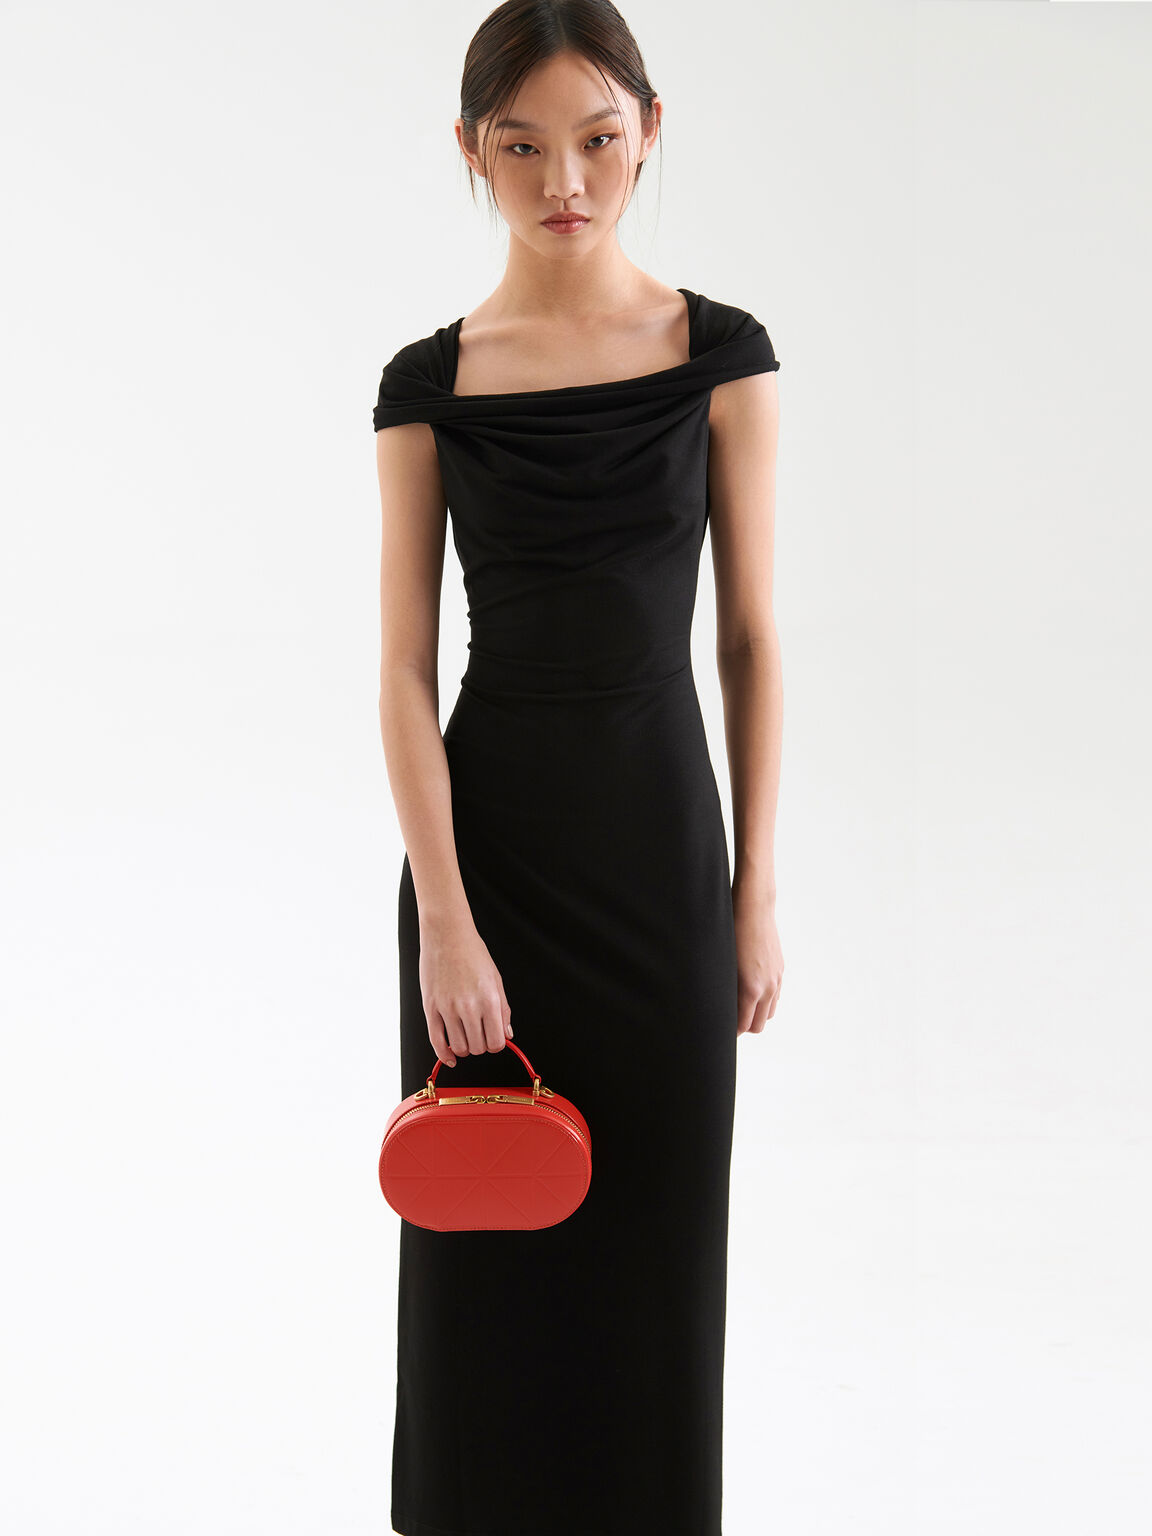 PEDRO Studio Cara Leather Mini Shoulder Bag in Pixel, Red, hi-res